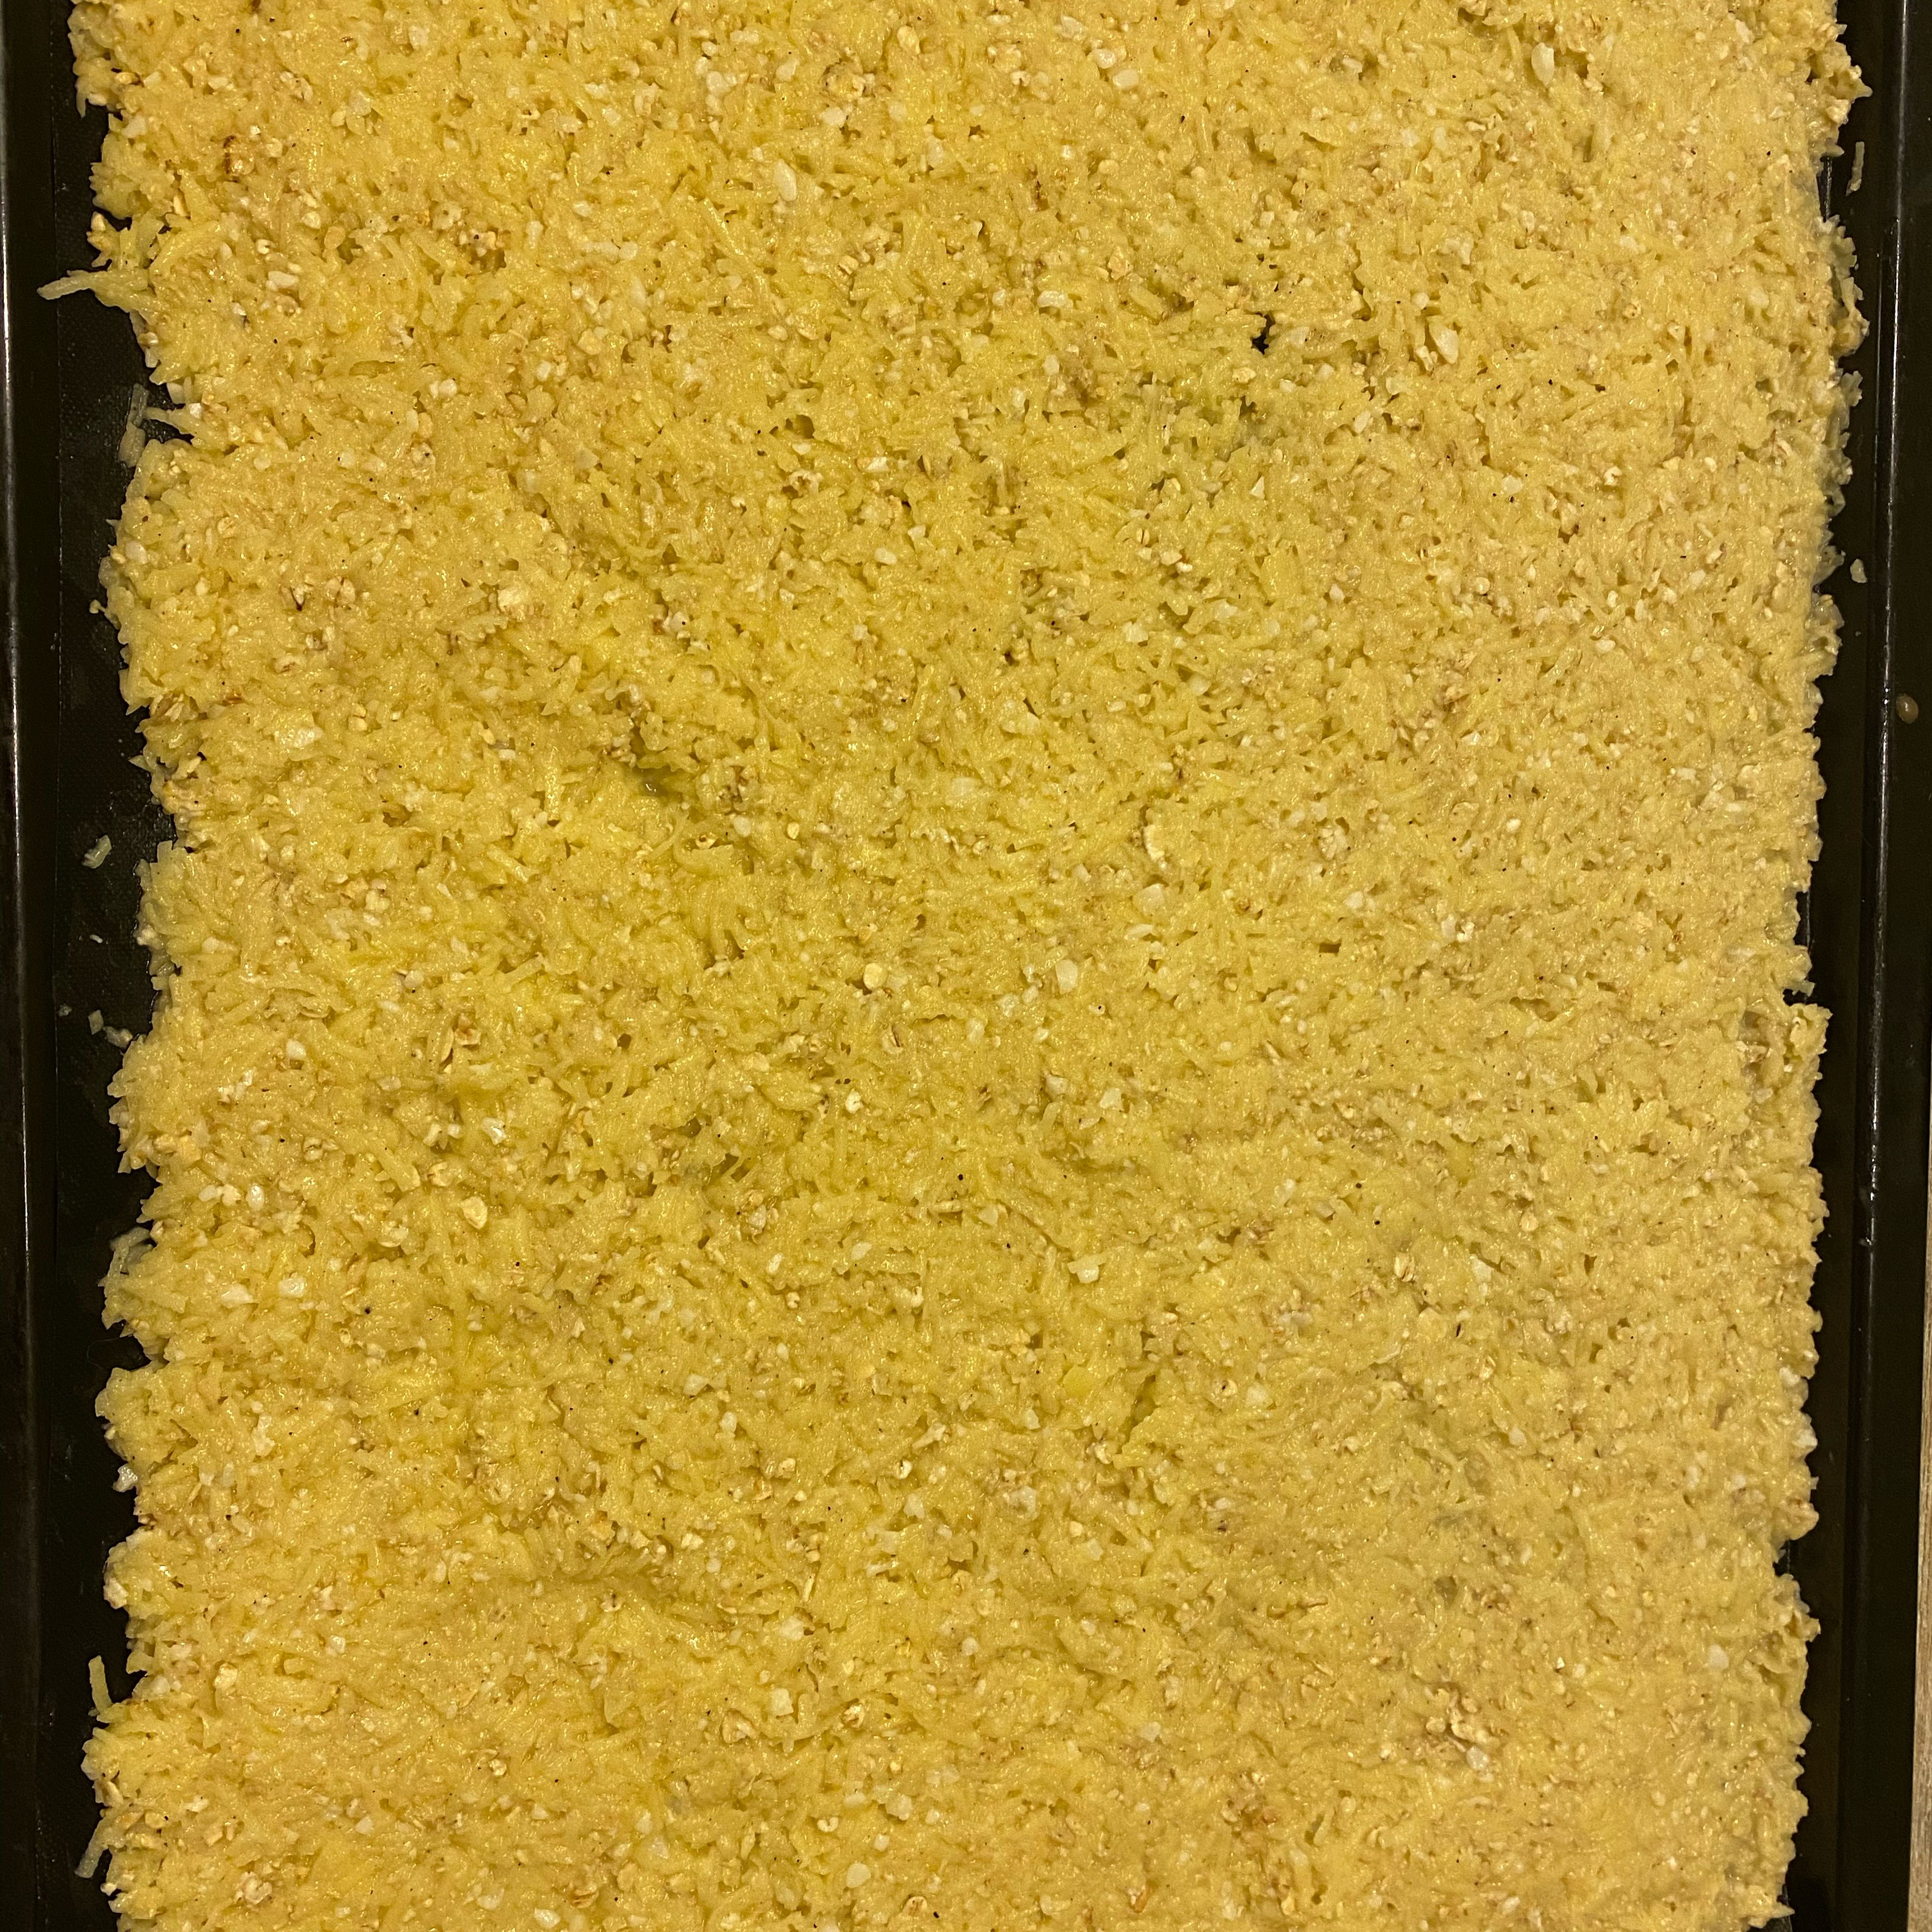 Das Cookit Universalmesser entfernen und die Masse auf ein mit Backpapier ausgelegtes Blech verteilen und glatt streichen.